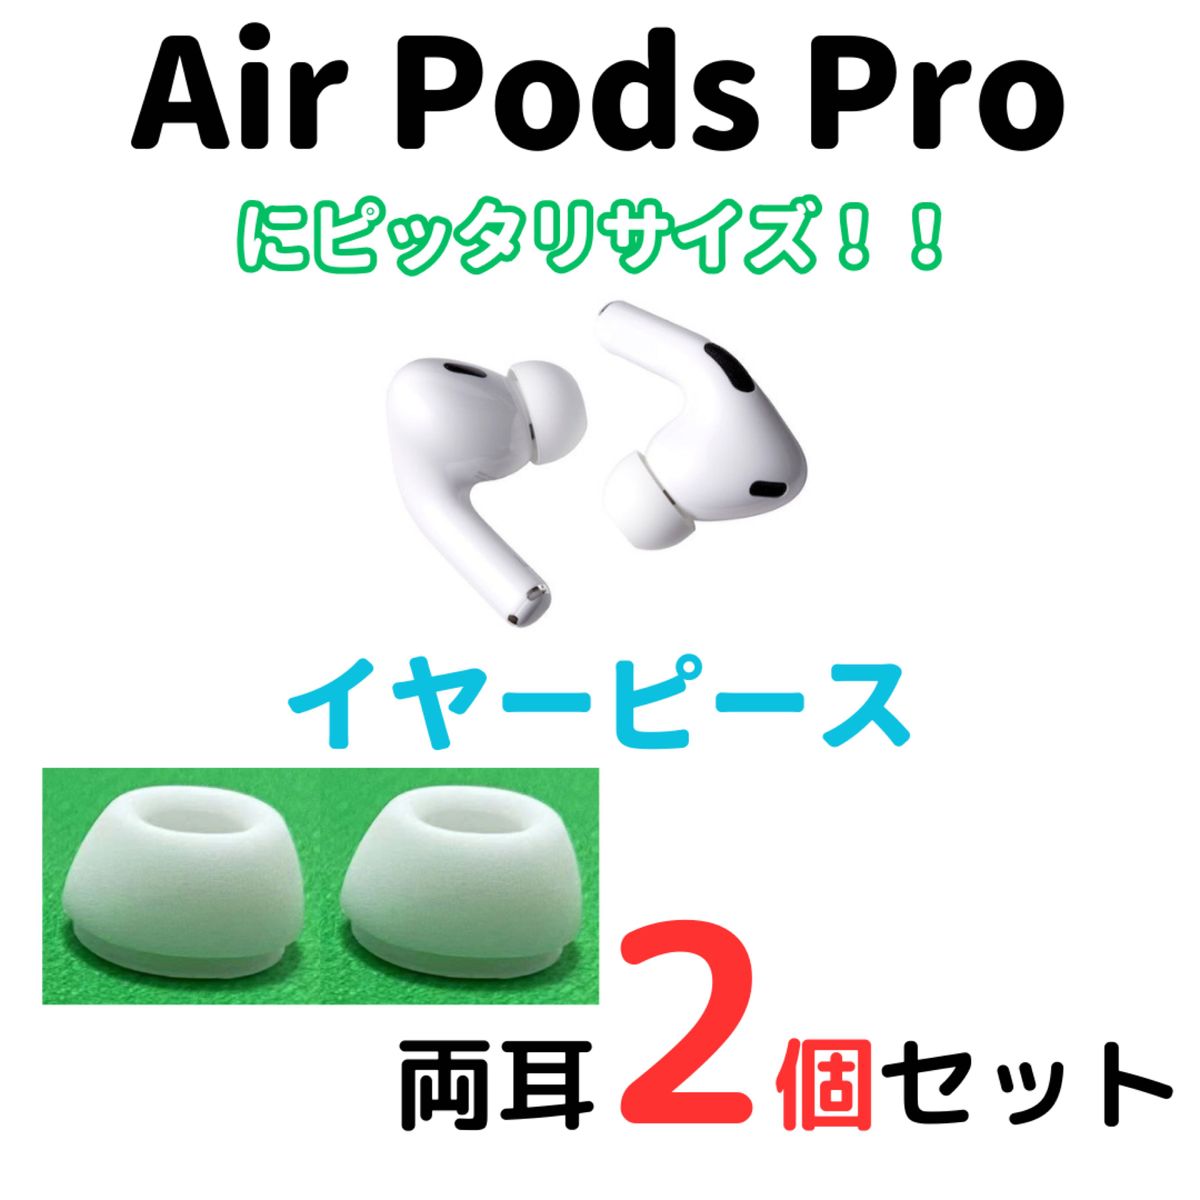 AirPods Pro用 イヤーピース イヤーチップ S 白 2個 エアーポッツ 92